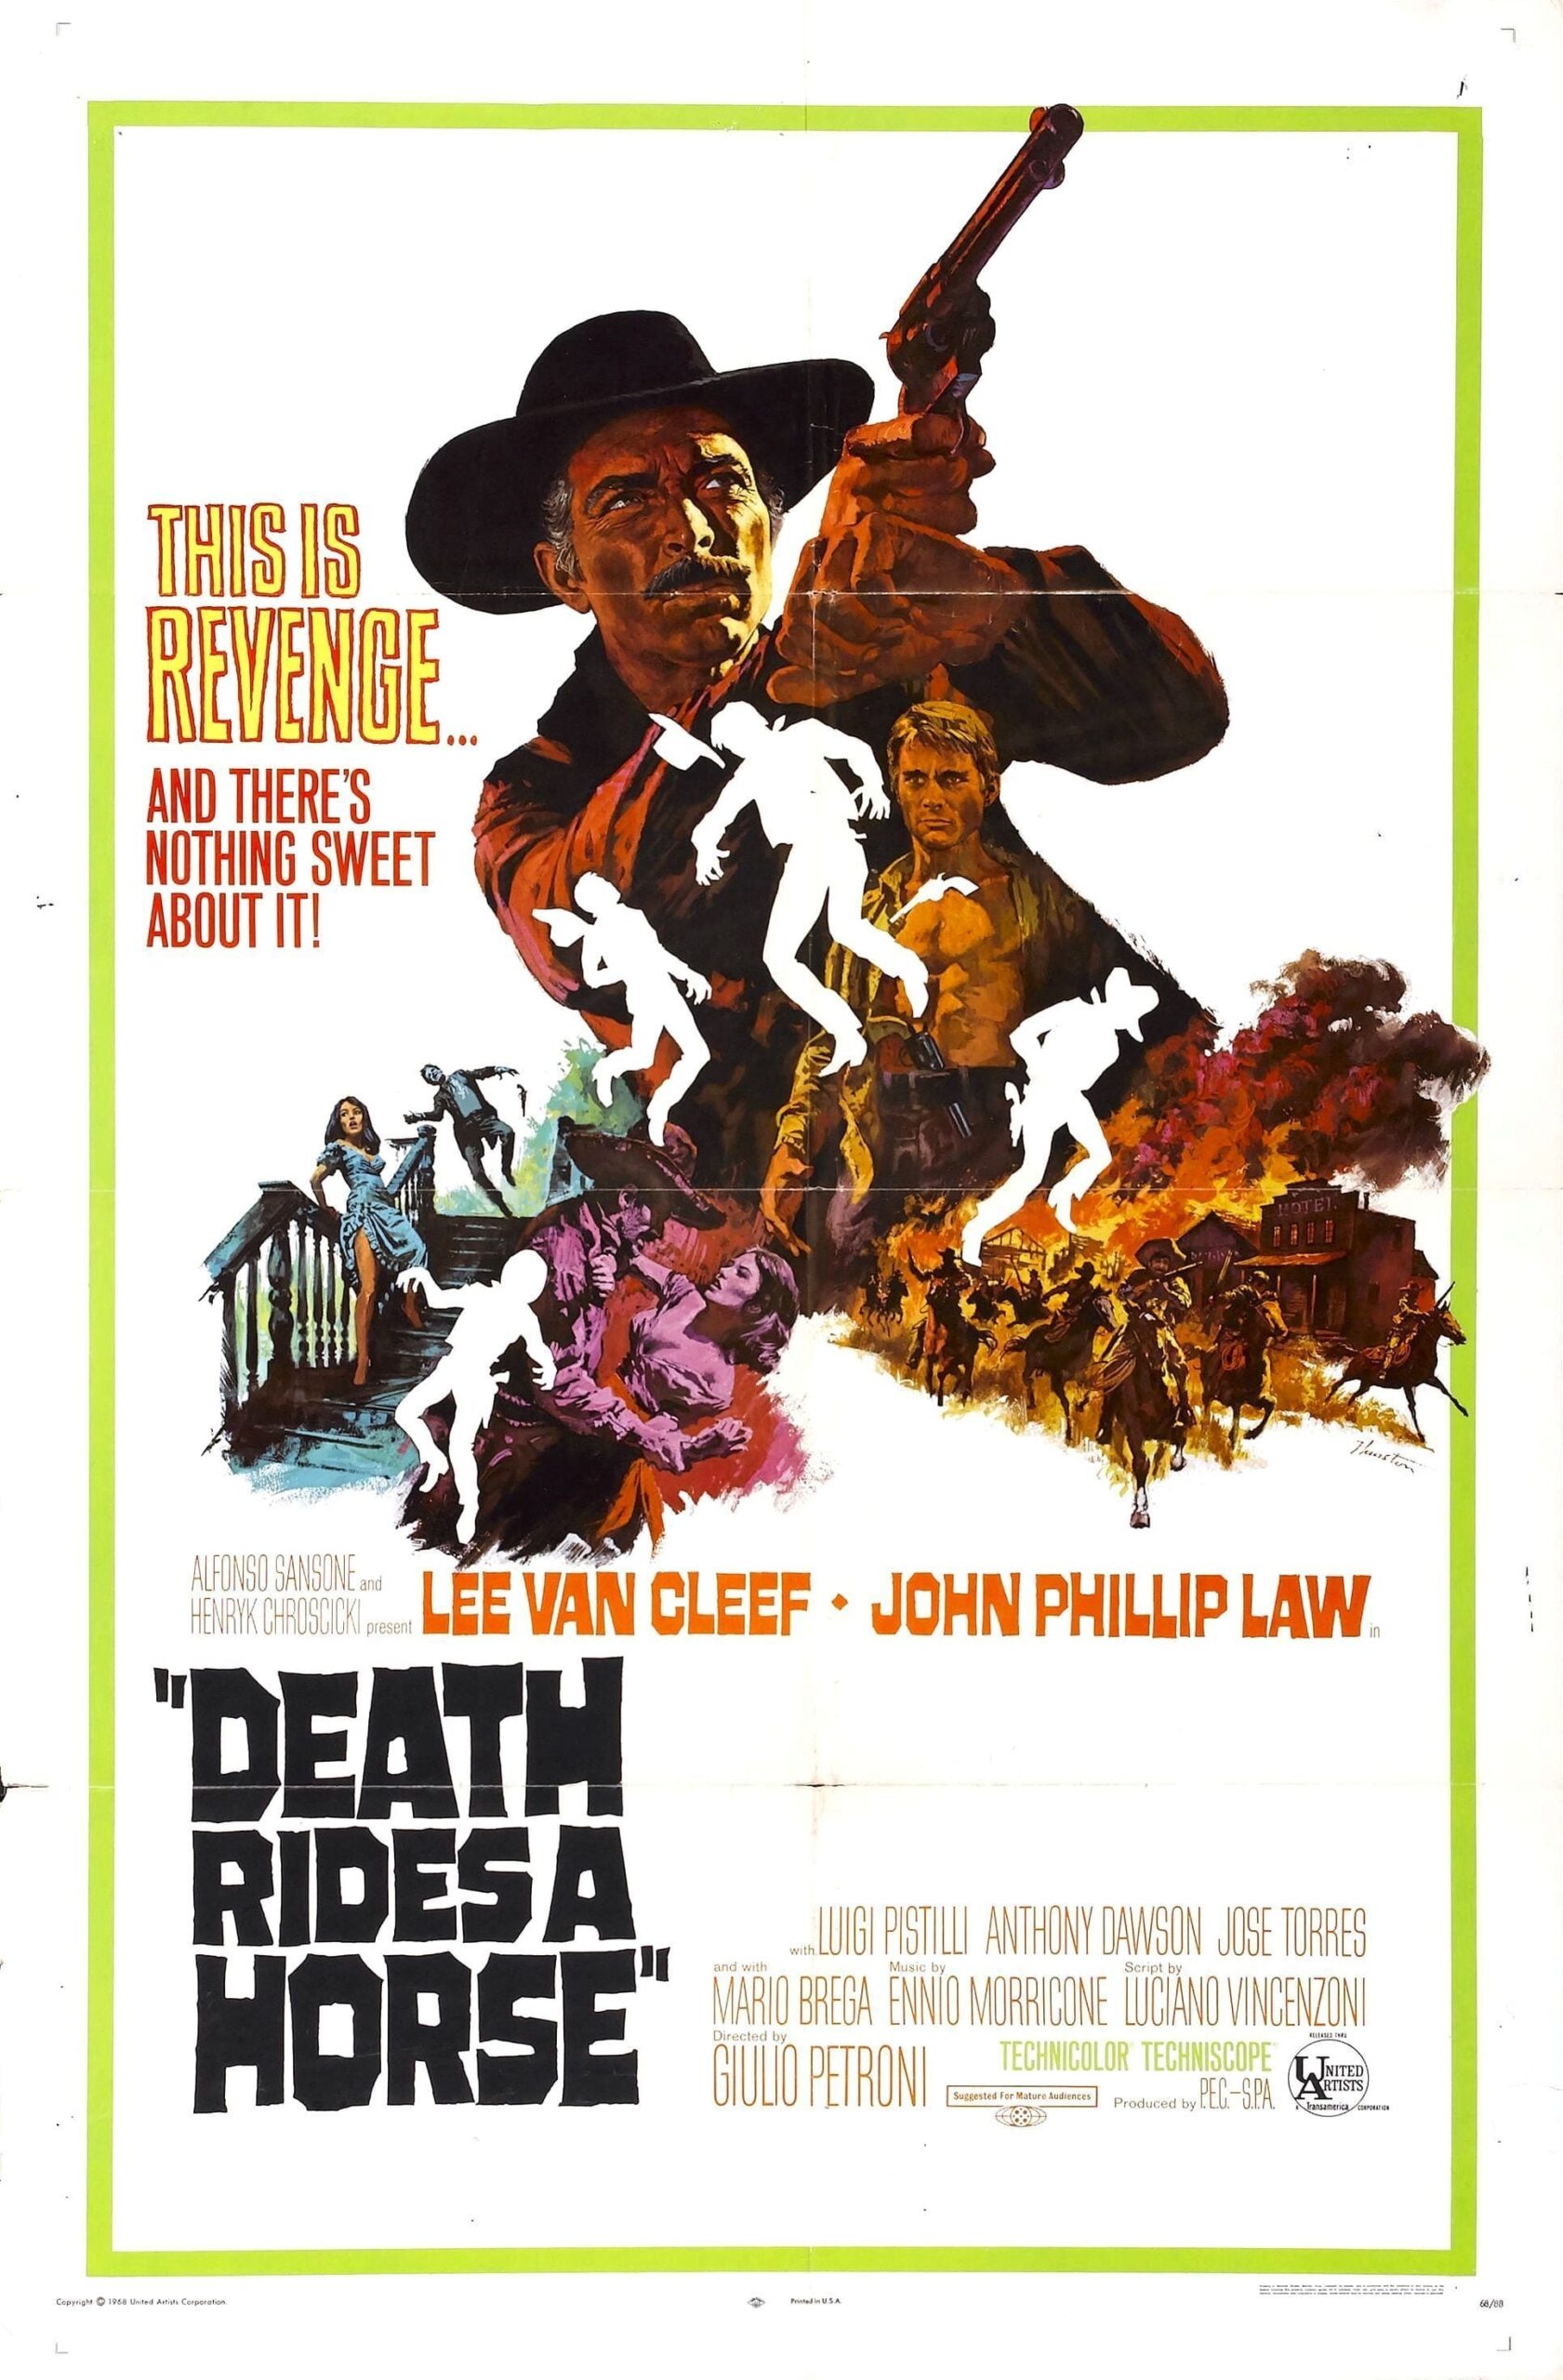 ดูหนังออนไลน์ฟรี Death Rides a Horse 1967 เสือเฒ่า สิงห์หนุ่ม